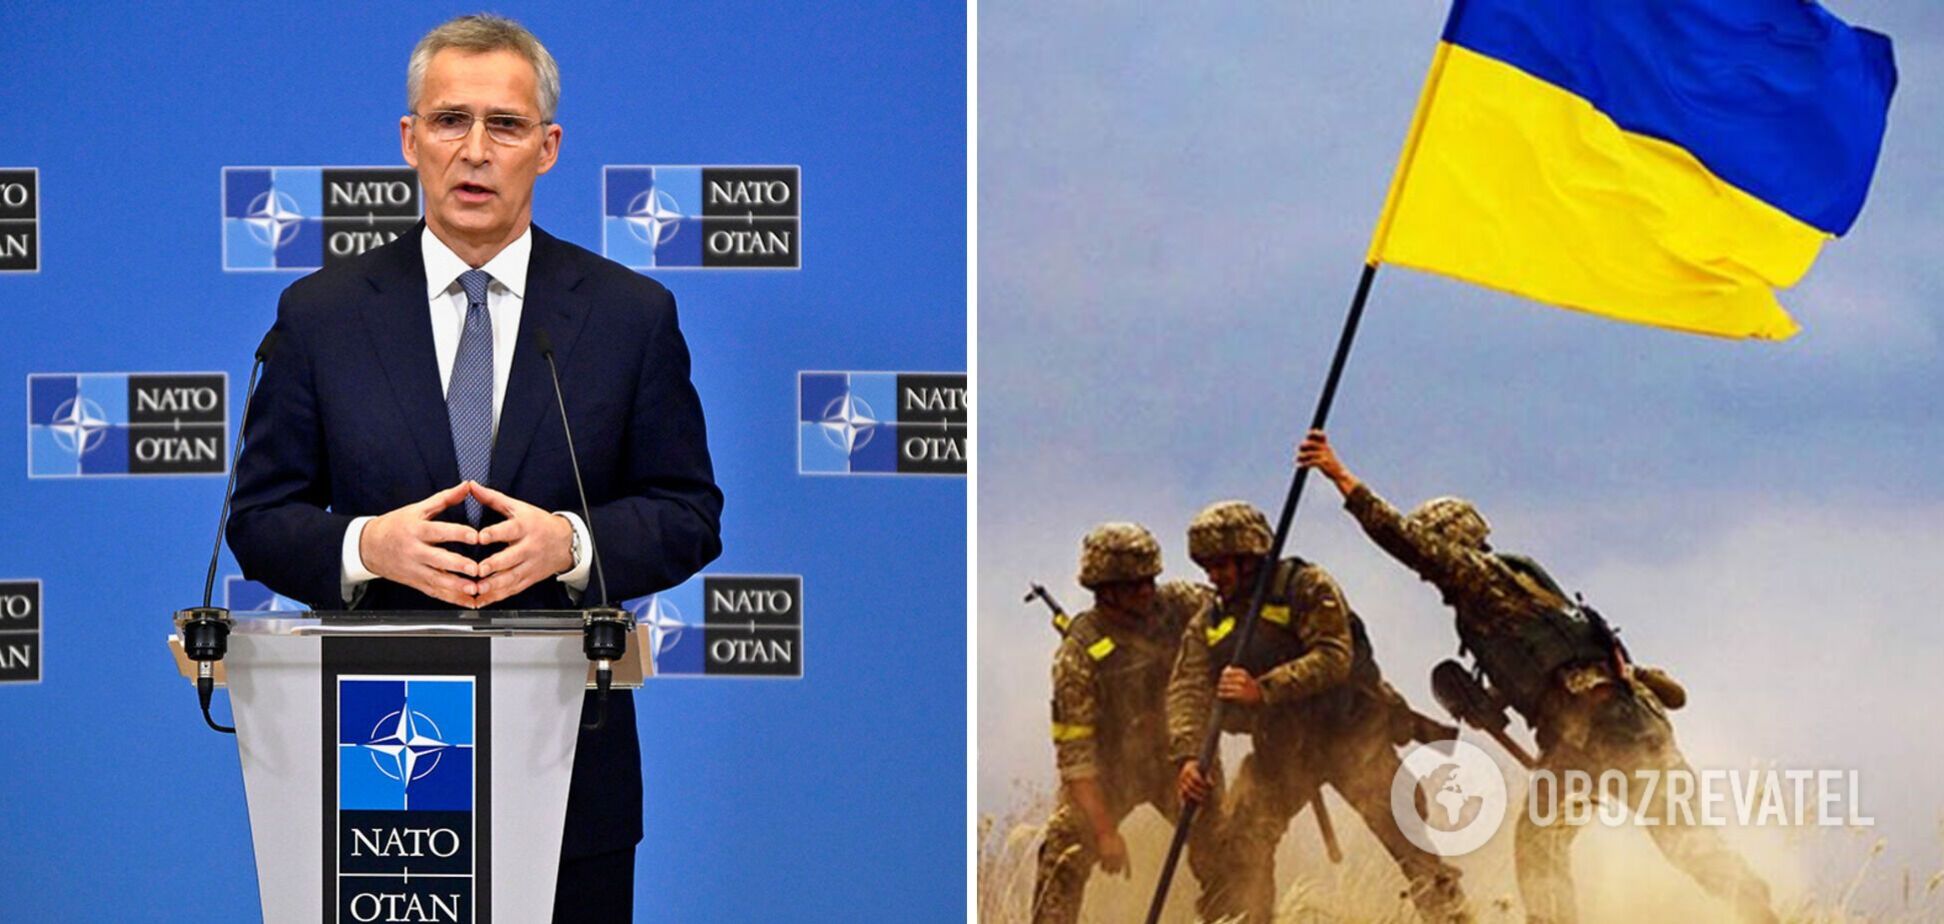 Політику і військову доцільність в Україні слід розділяти, як в НАТО